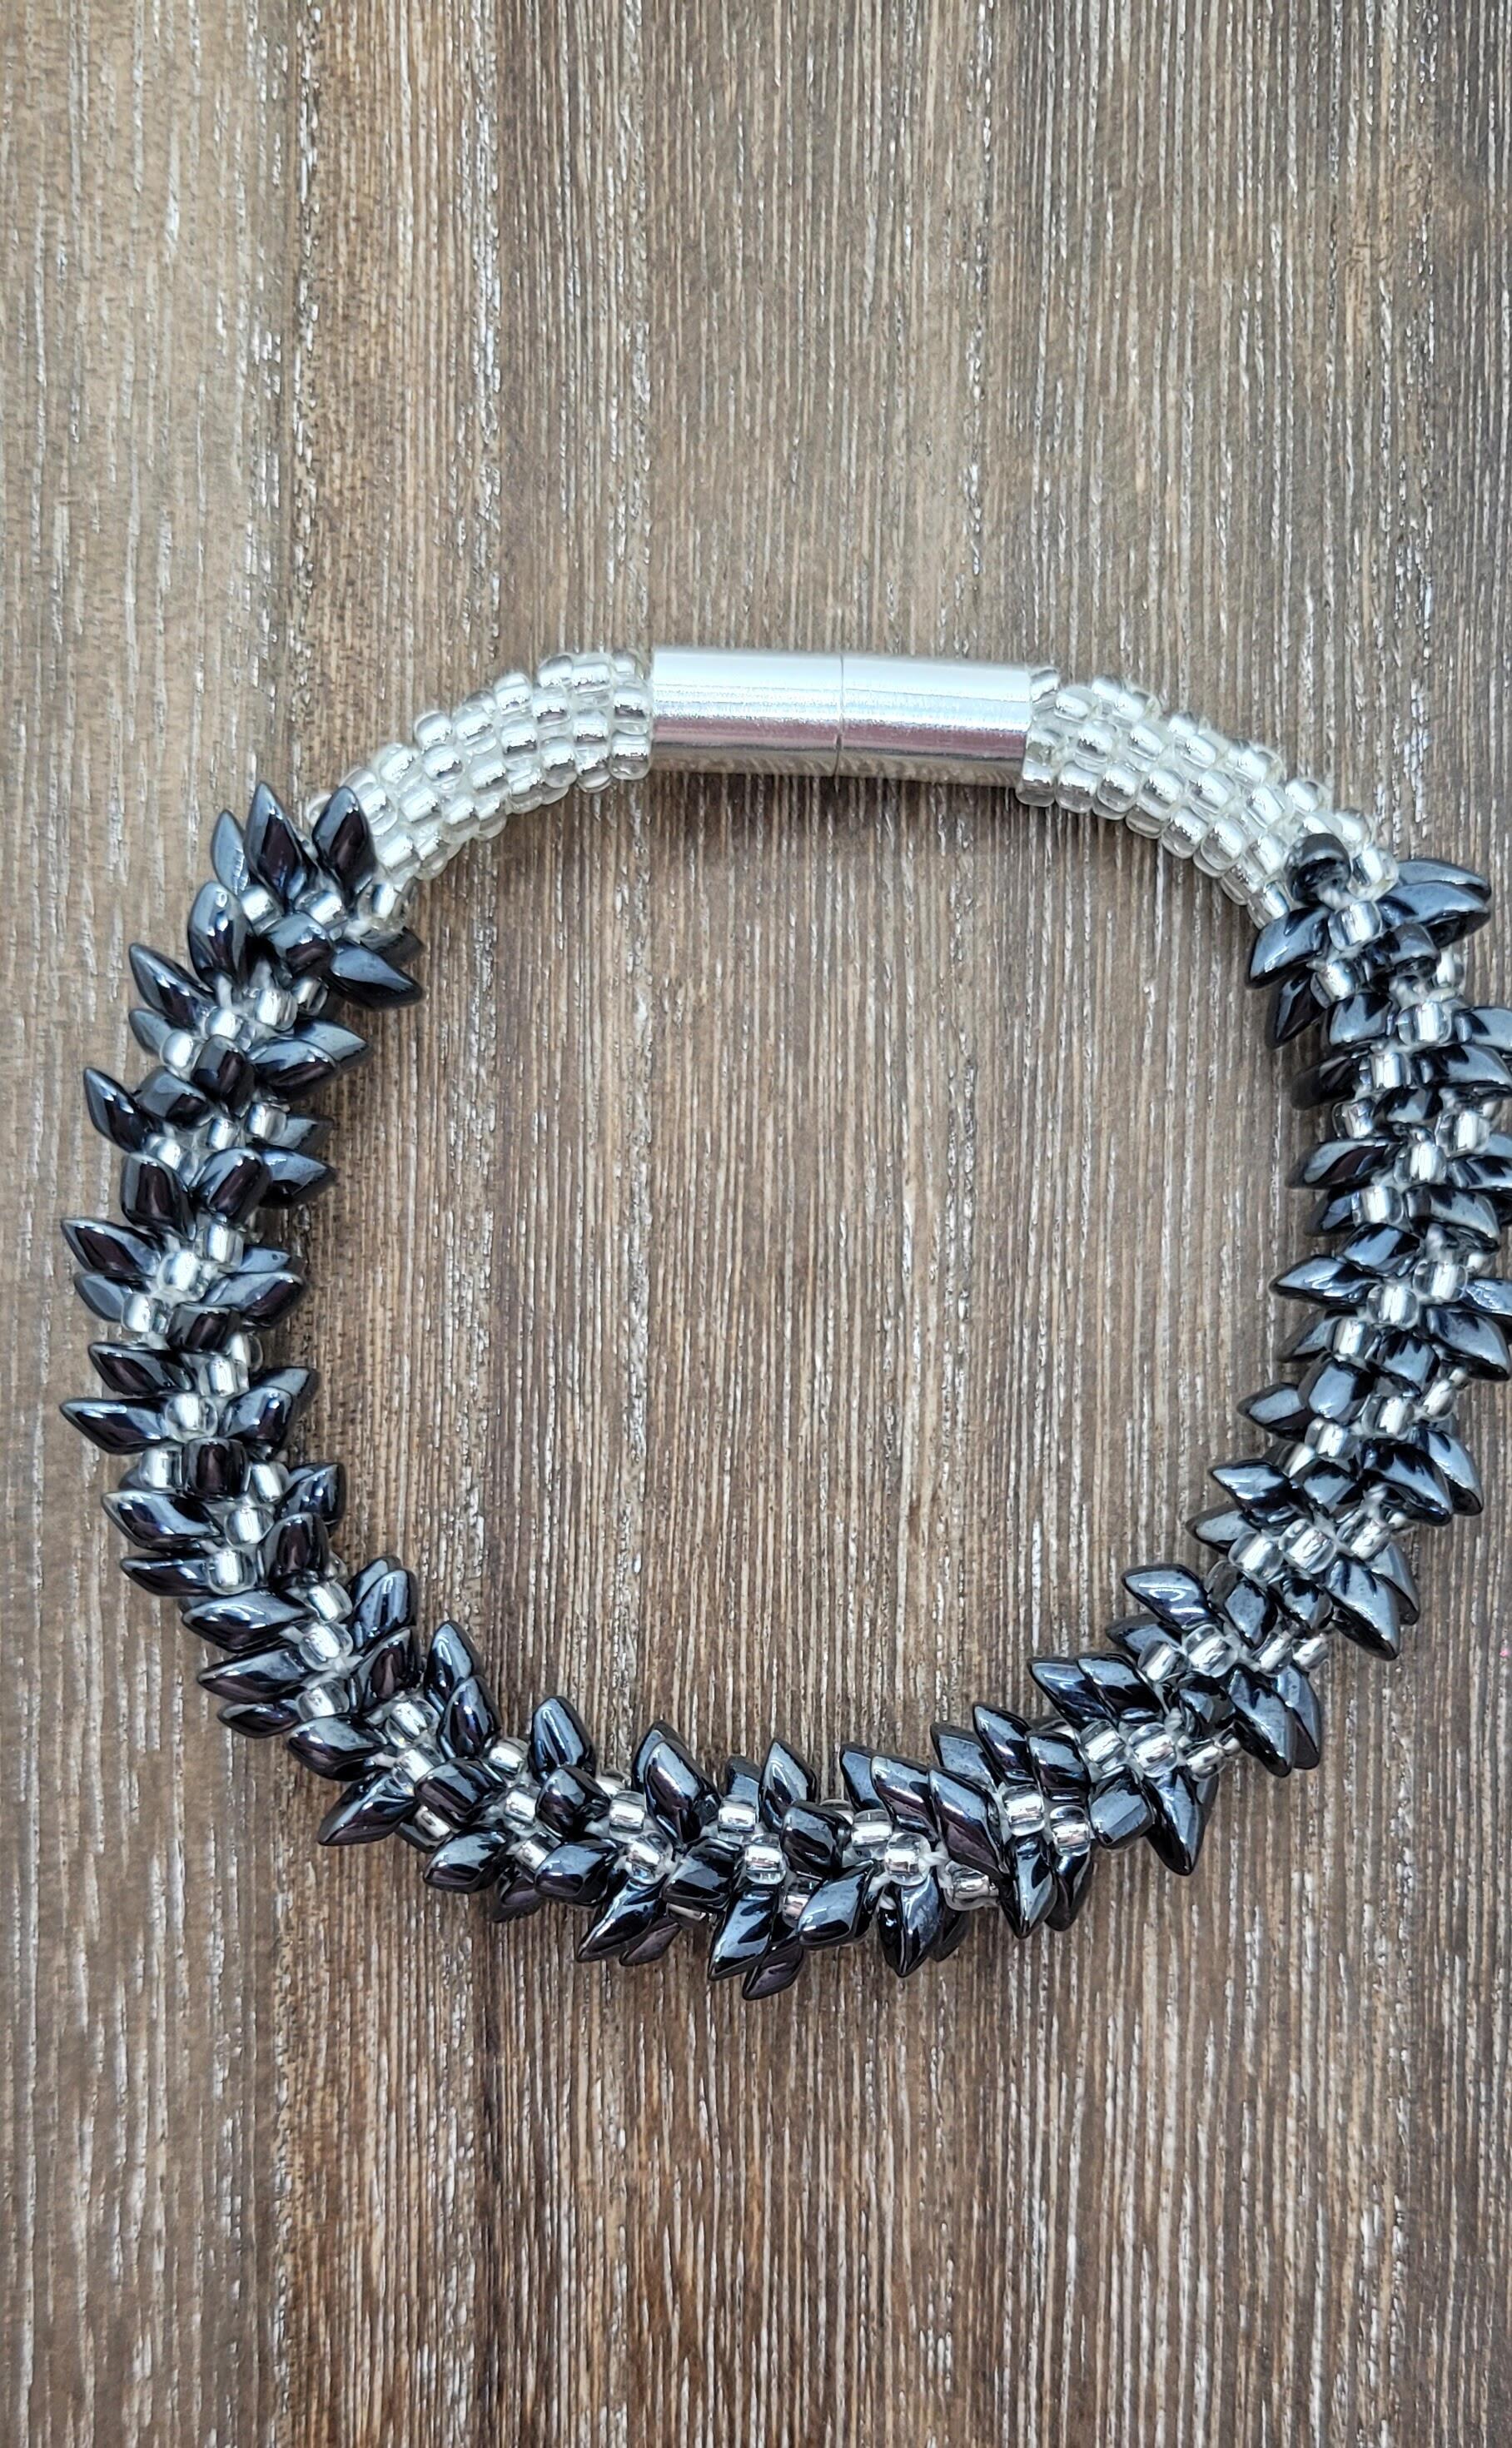 Jewelry  Bracelets  Beaded Bracelets  Long Magatama and Seed Bead  Kumihimo Bracelet